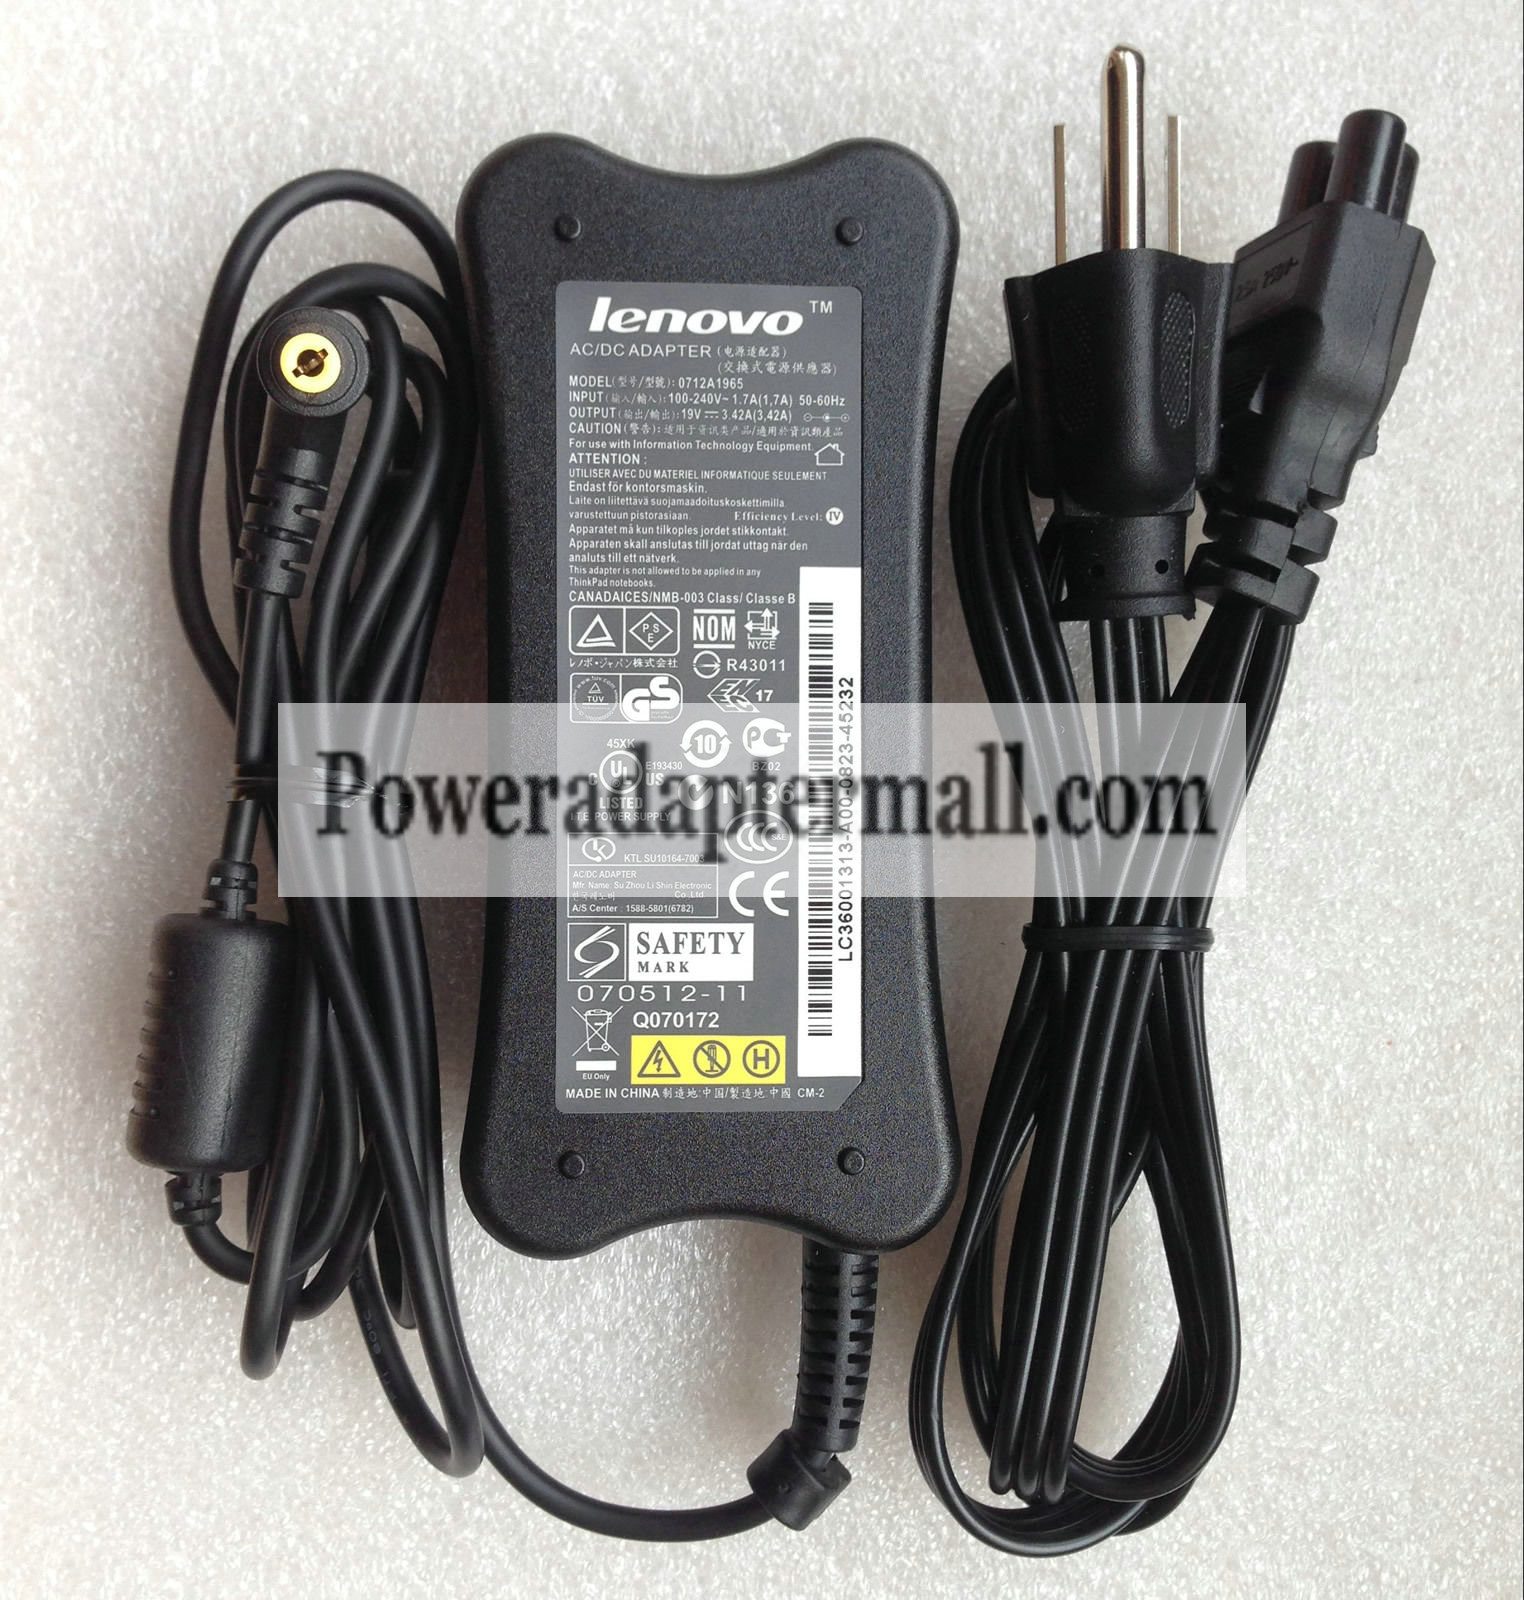 Lenovo IdeaPad Y310 Y310-7756 19V 3.42A AC Adapter Power Supply